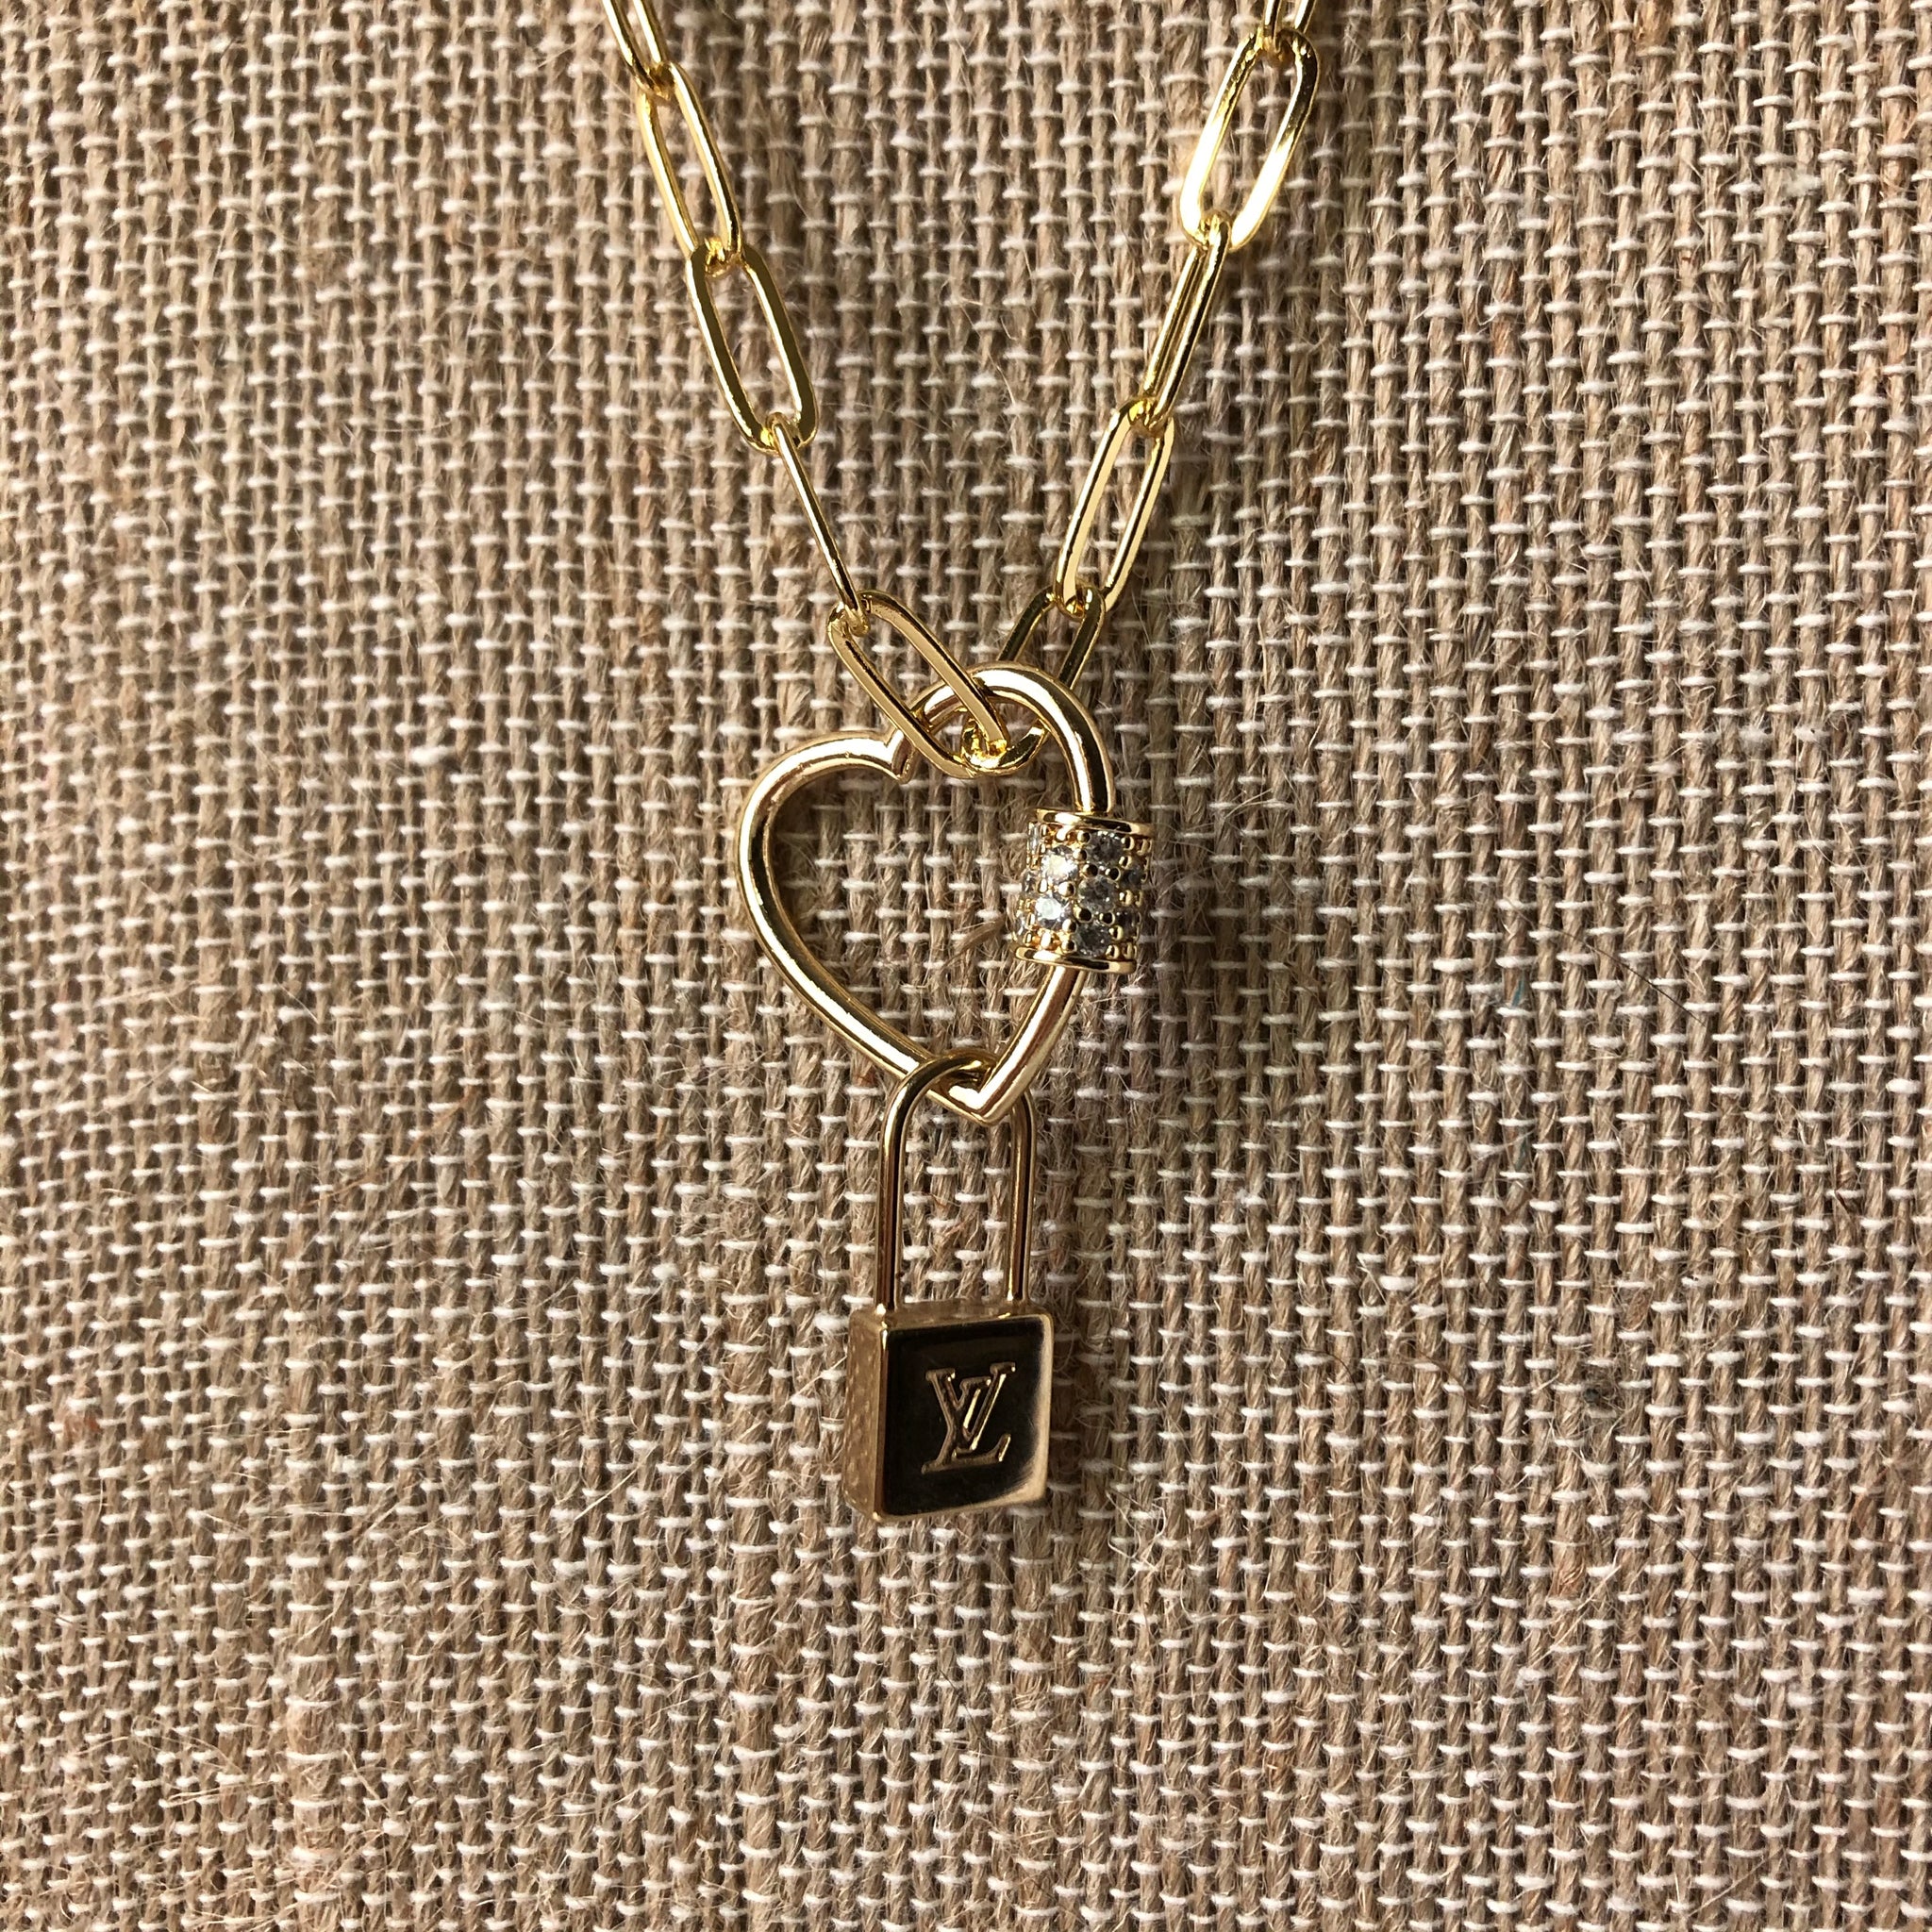 Louis Vuitton Lock Charm Necklace